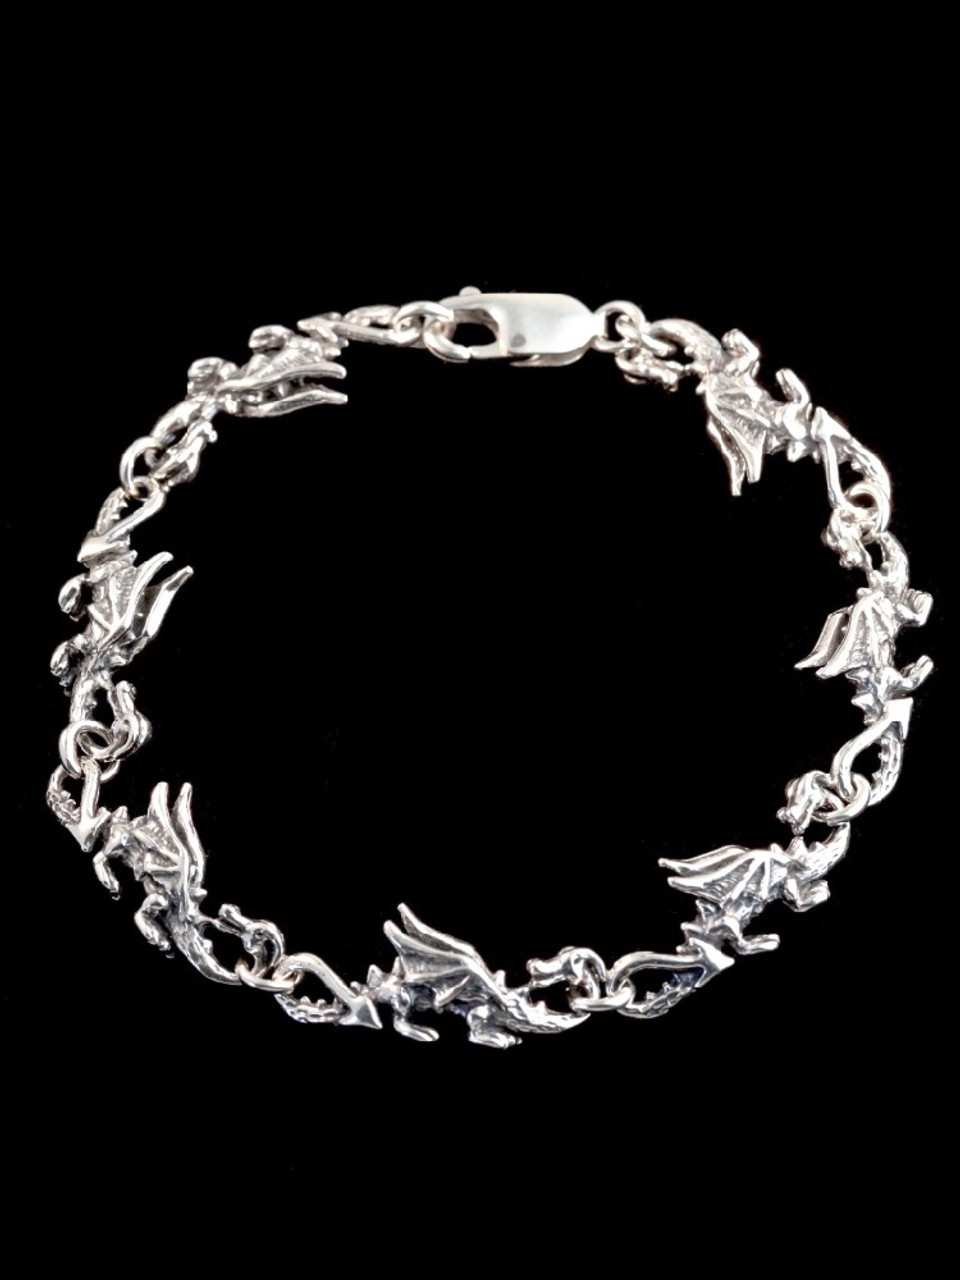 Dragon Bracelet - 7 Links Jewelry